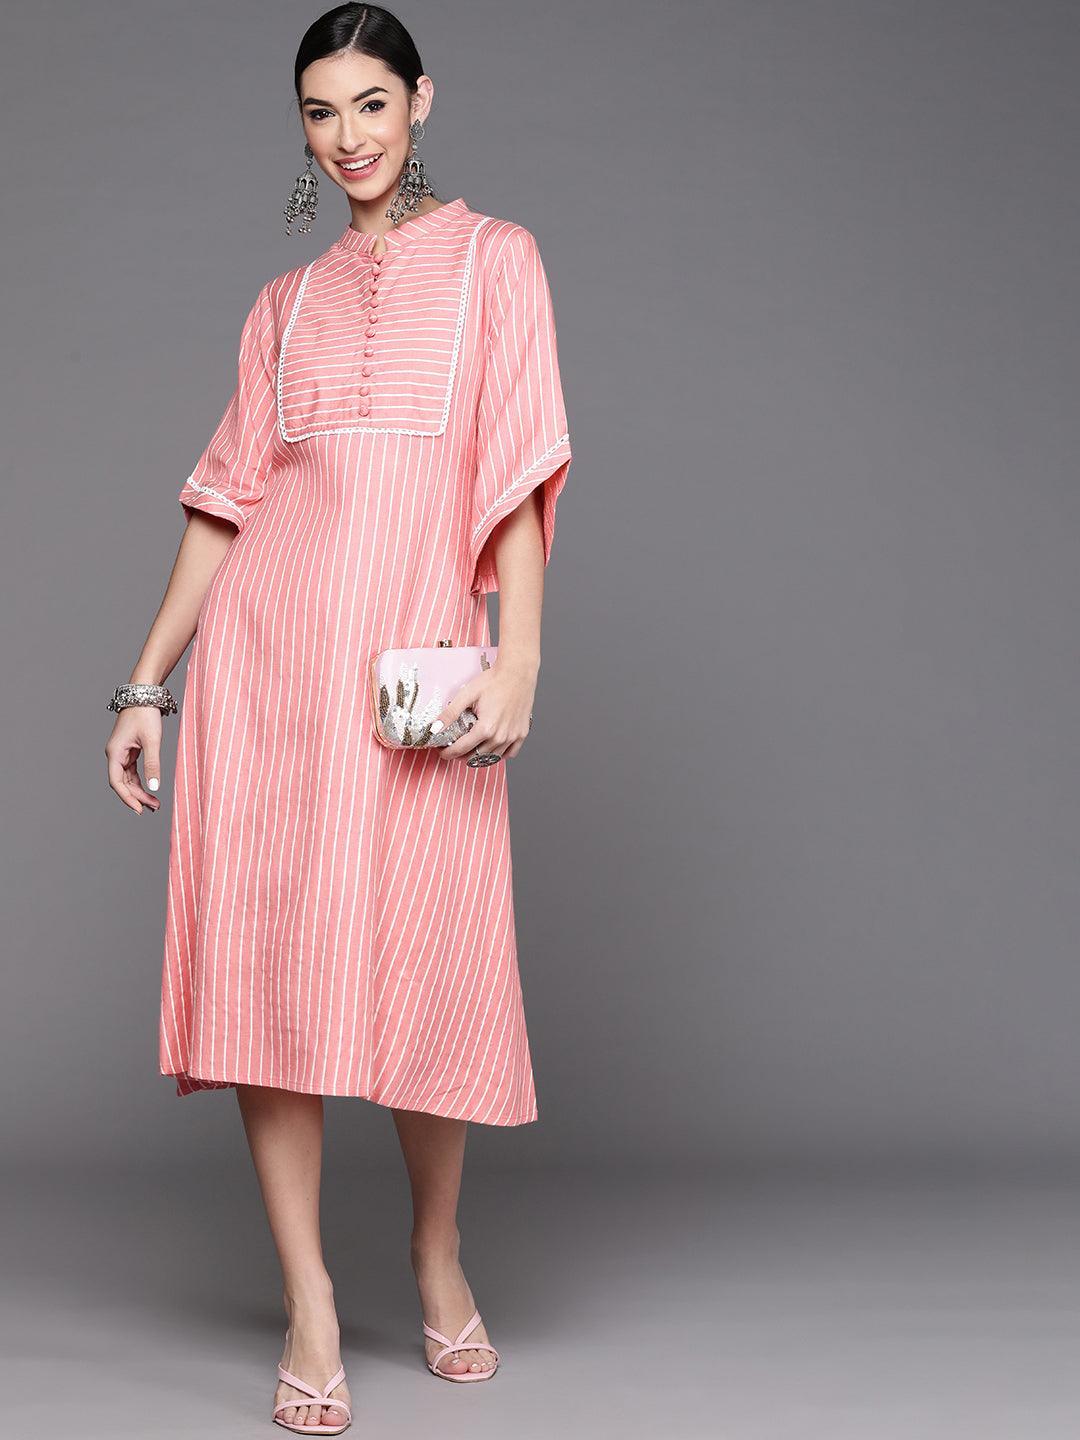 Pink Striped Cotton Dress - ShopLibas